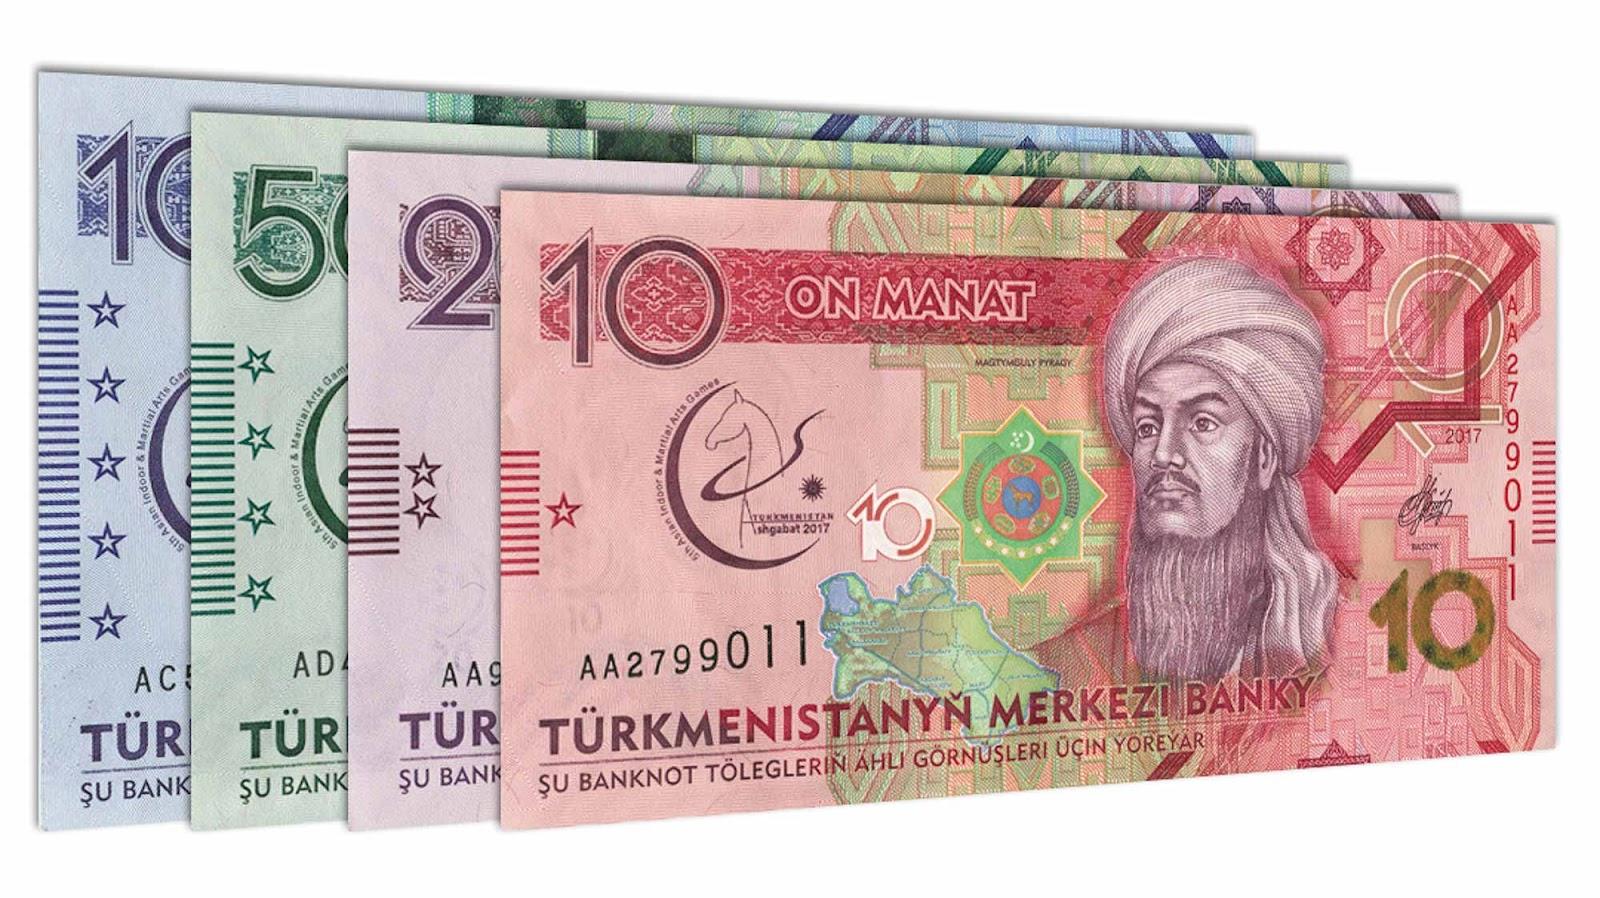 Turkmenistan Manat banknote series